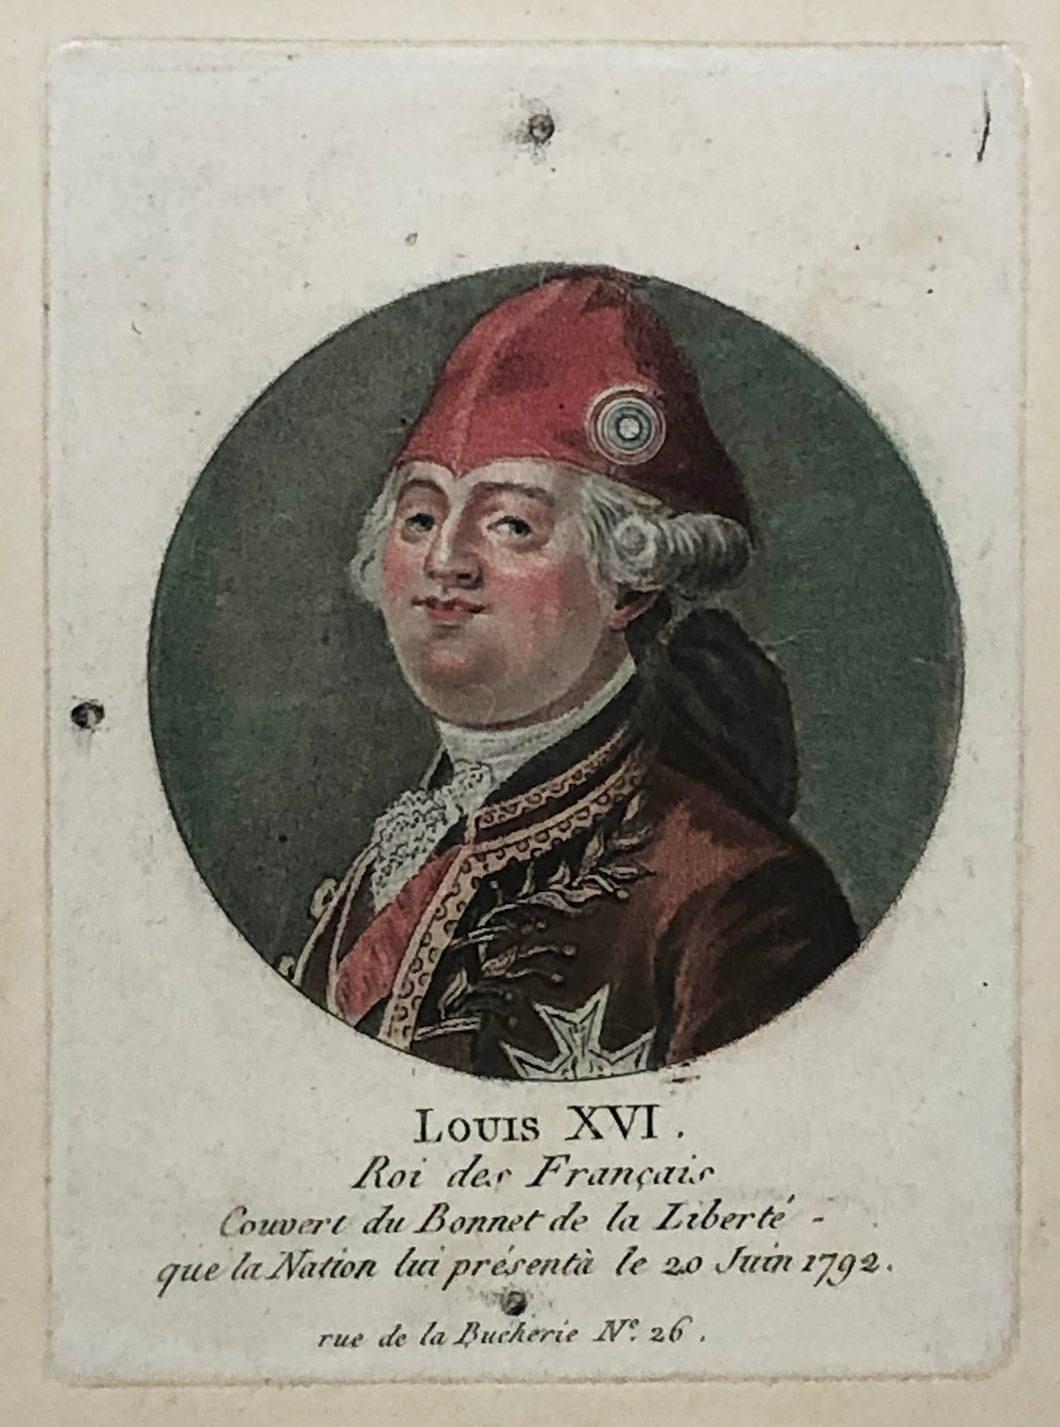 Louis XVI, Roi des Français, Couvert du Bonnet de la Liberté que la Nation lui présenta le 20 juin 1792.